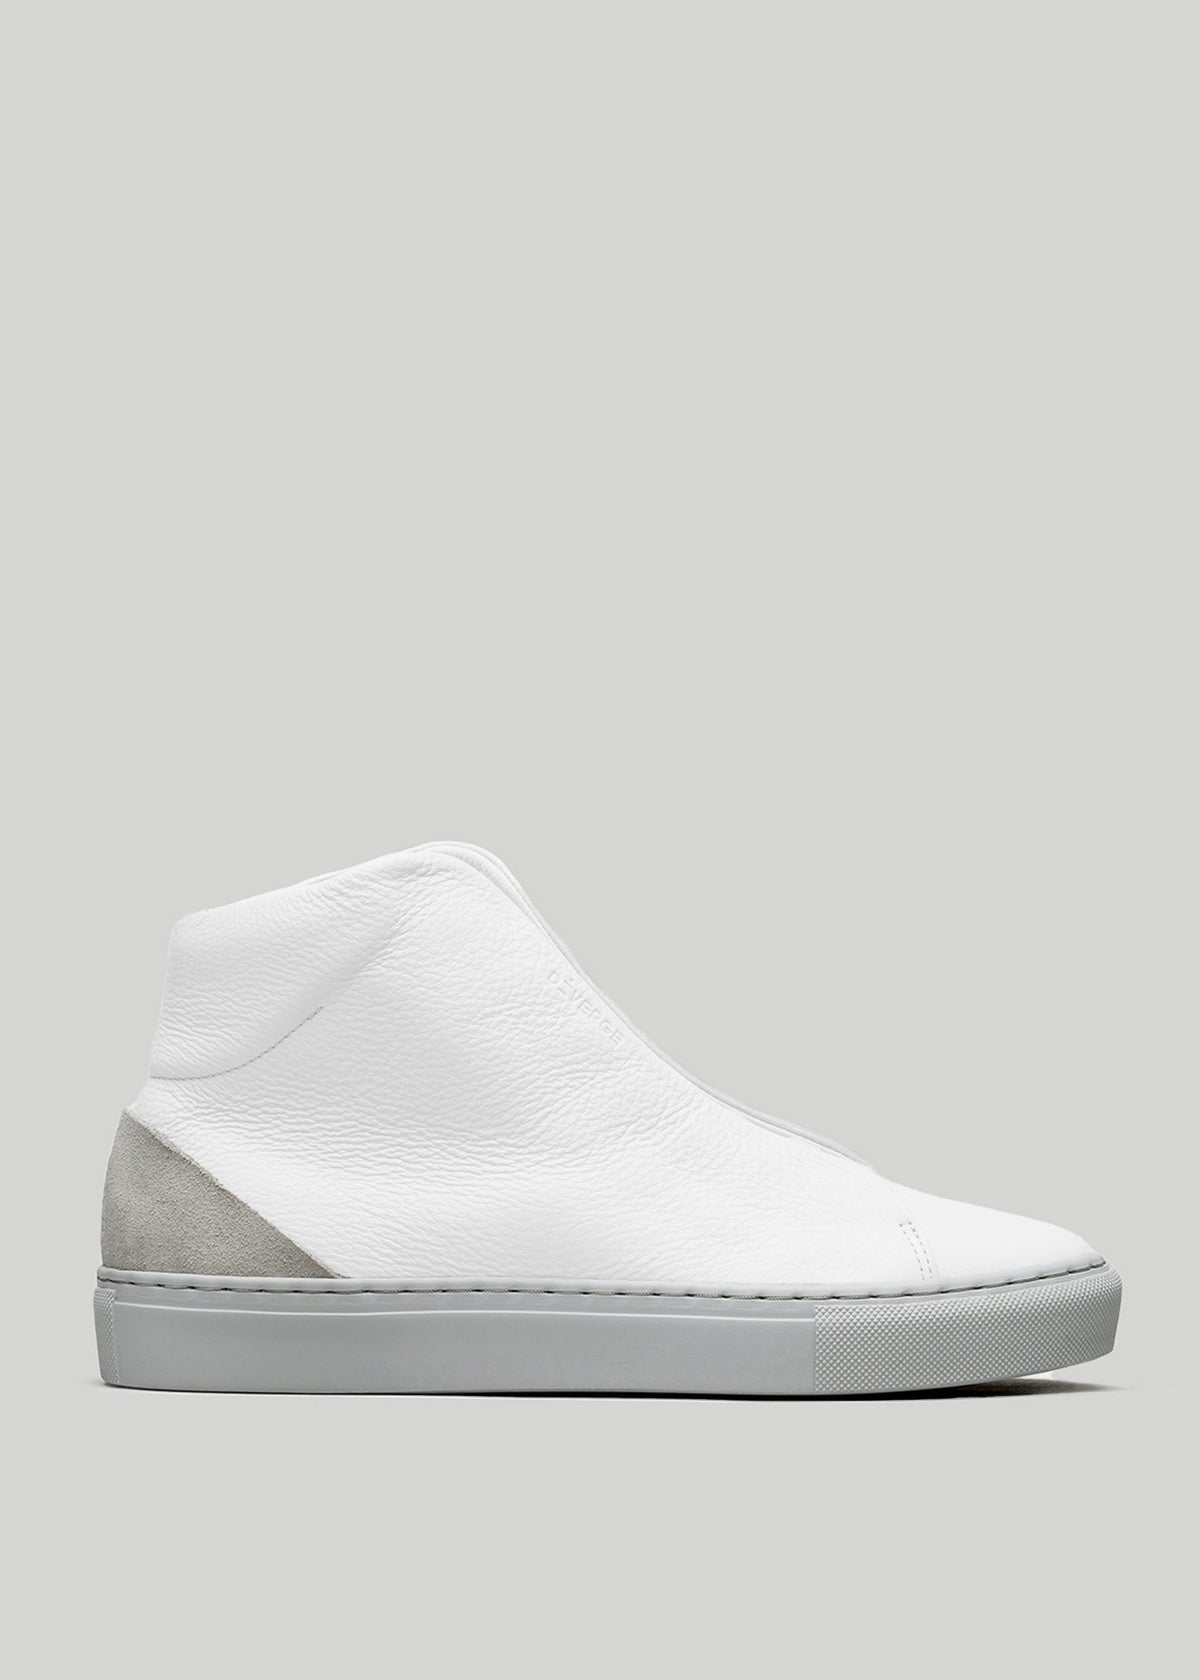 Sneaker alta V39 White W/ Grey con tomaia testurizzata, tallone in pelle scamosciata grigia e spessa suola in gomma bianca su sfondo grigio chiaro.